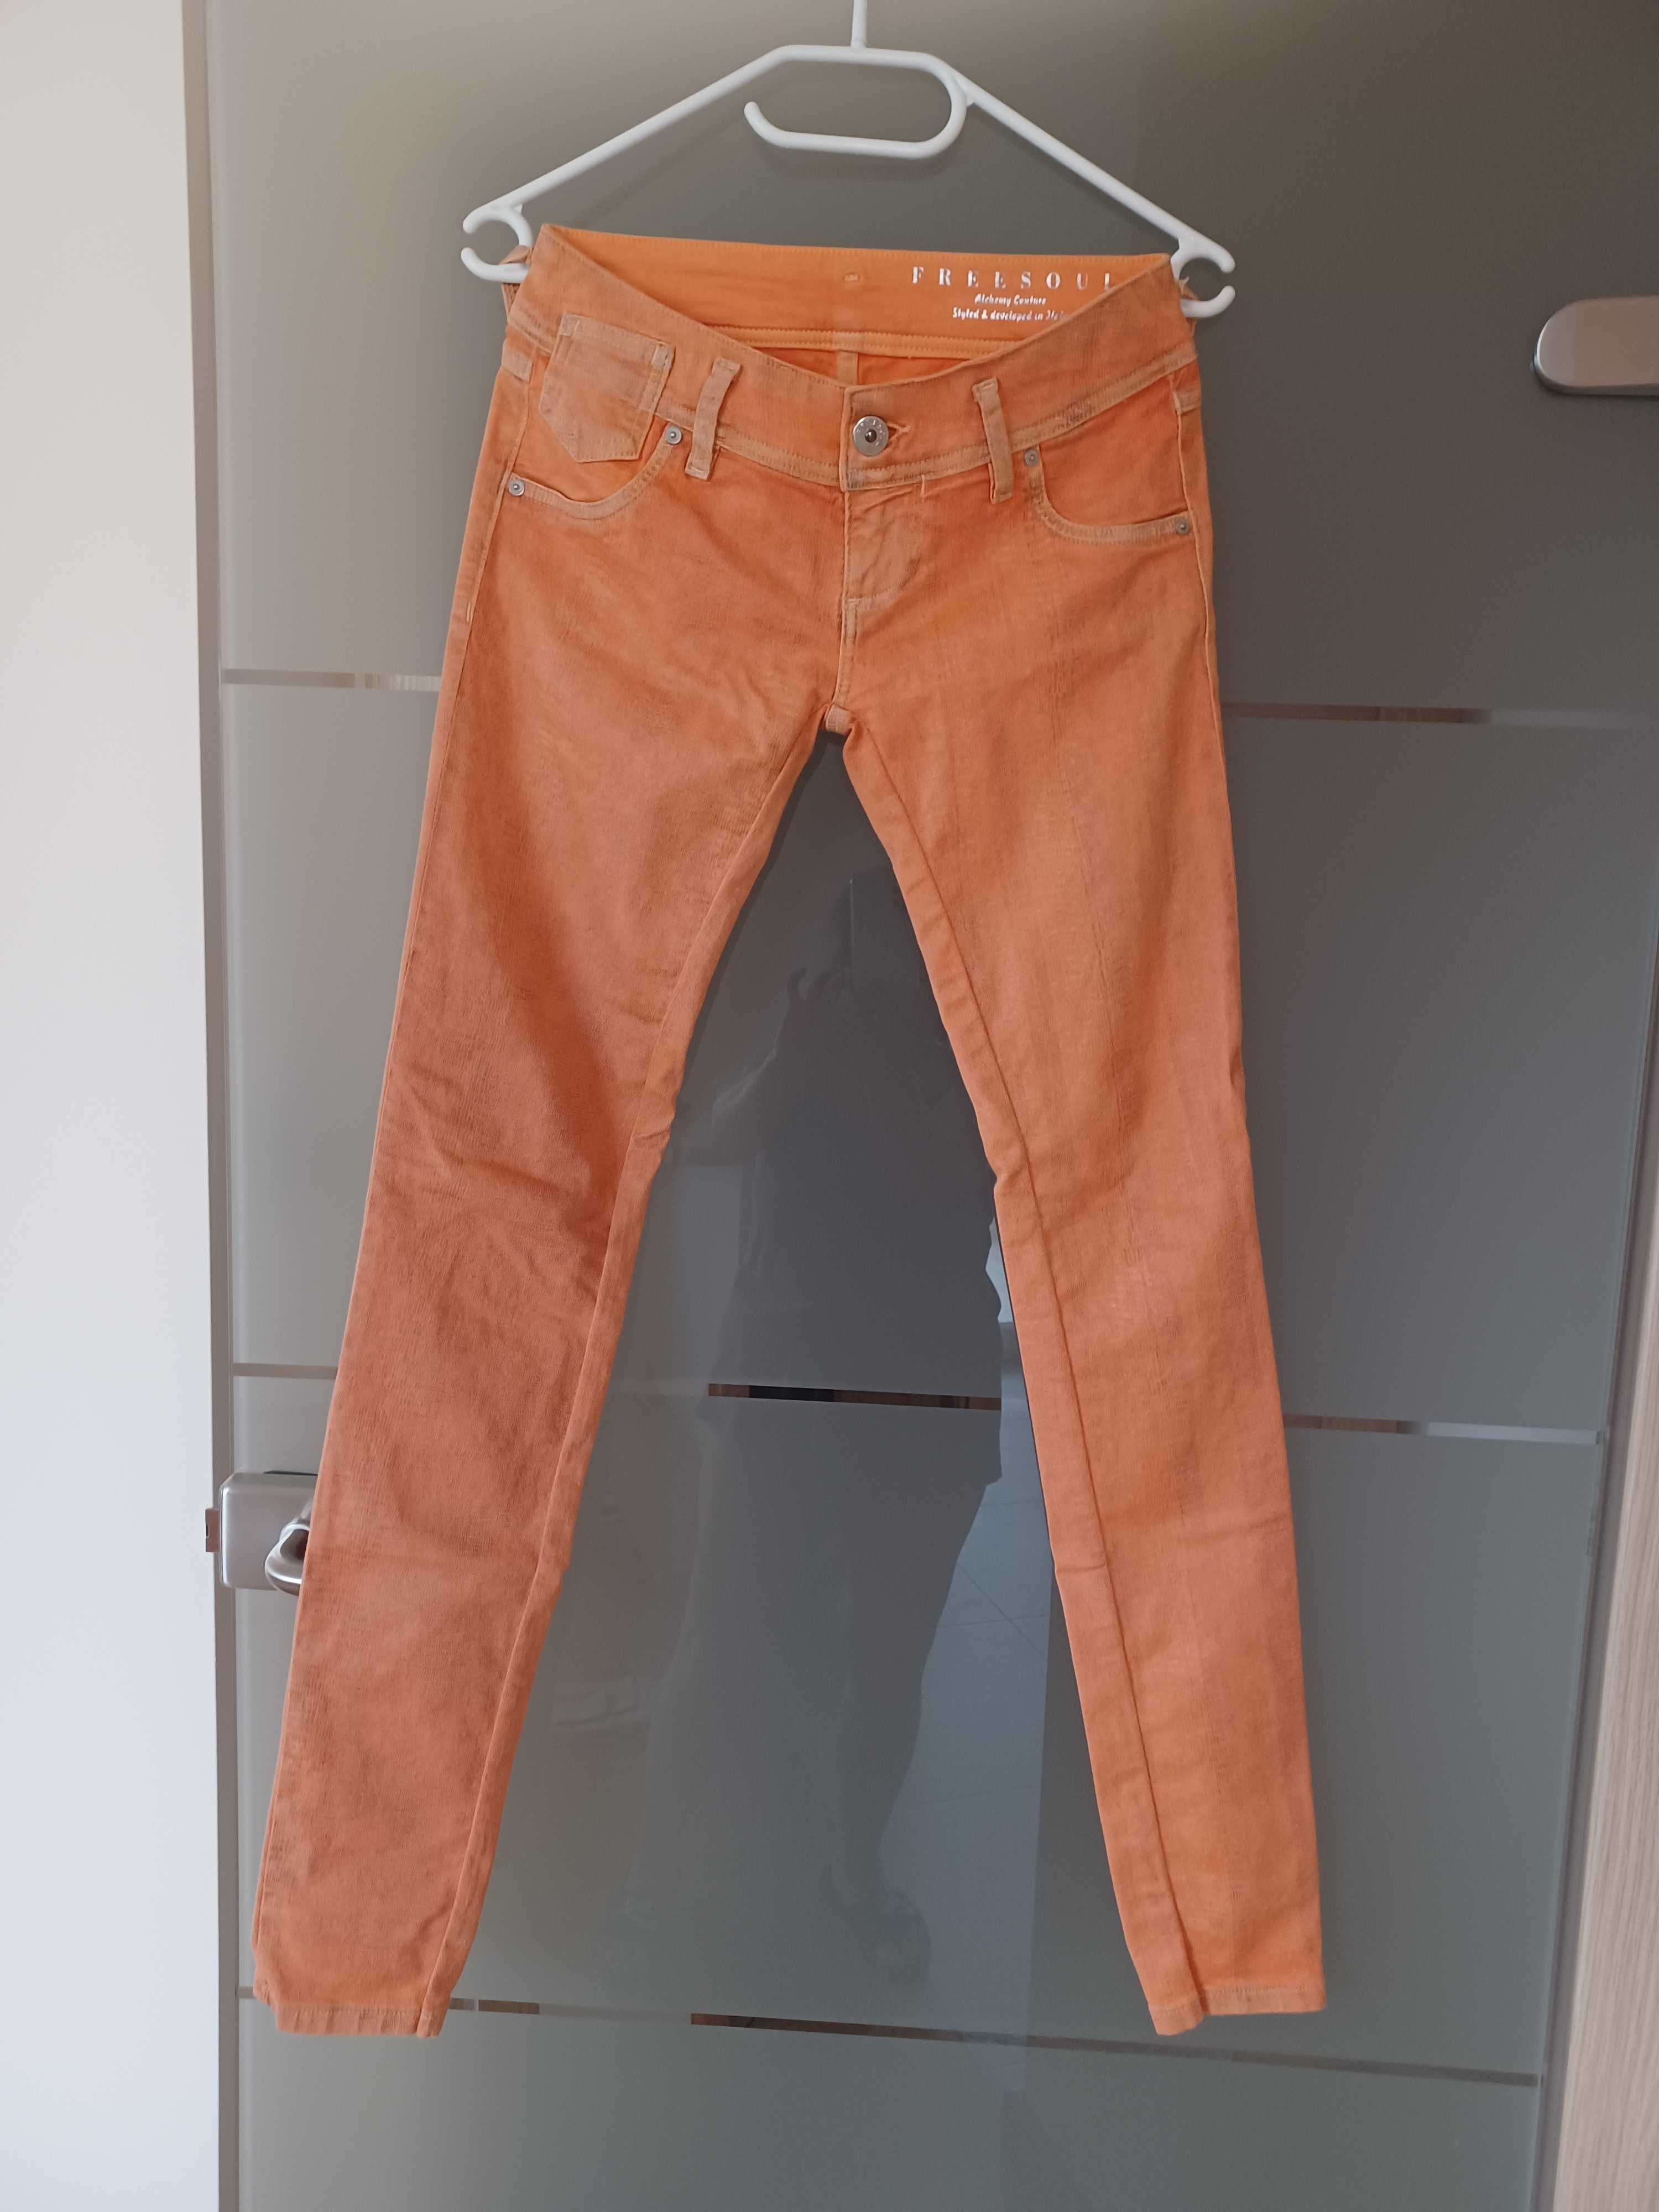 ab2. Jeansowe Spodnie Skinny marki Freesoul rozmiar S/M.